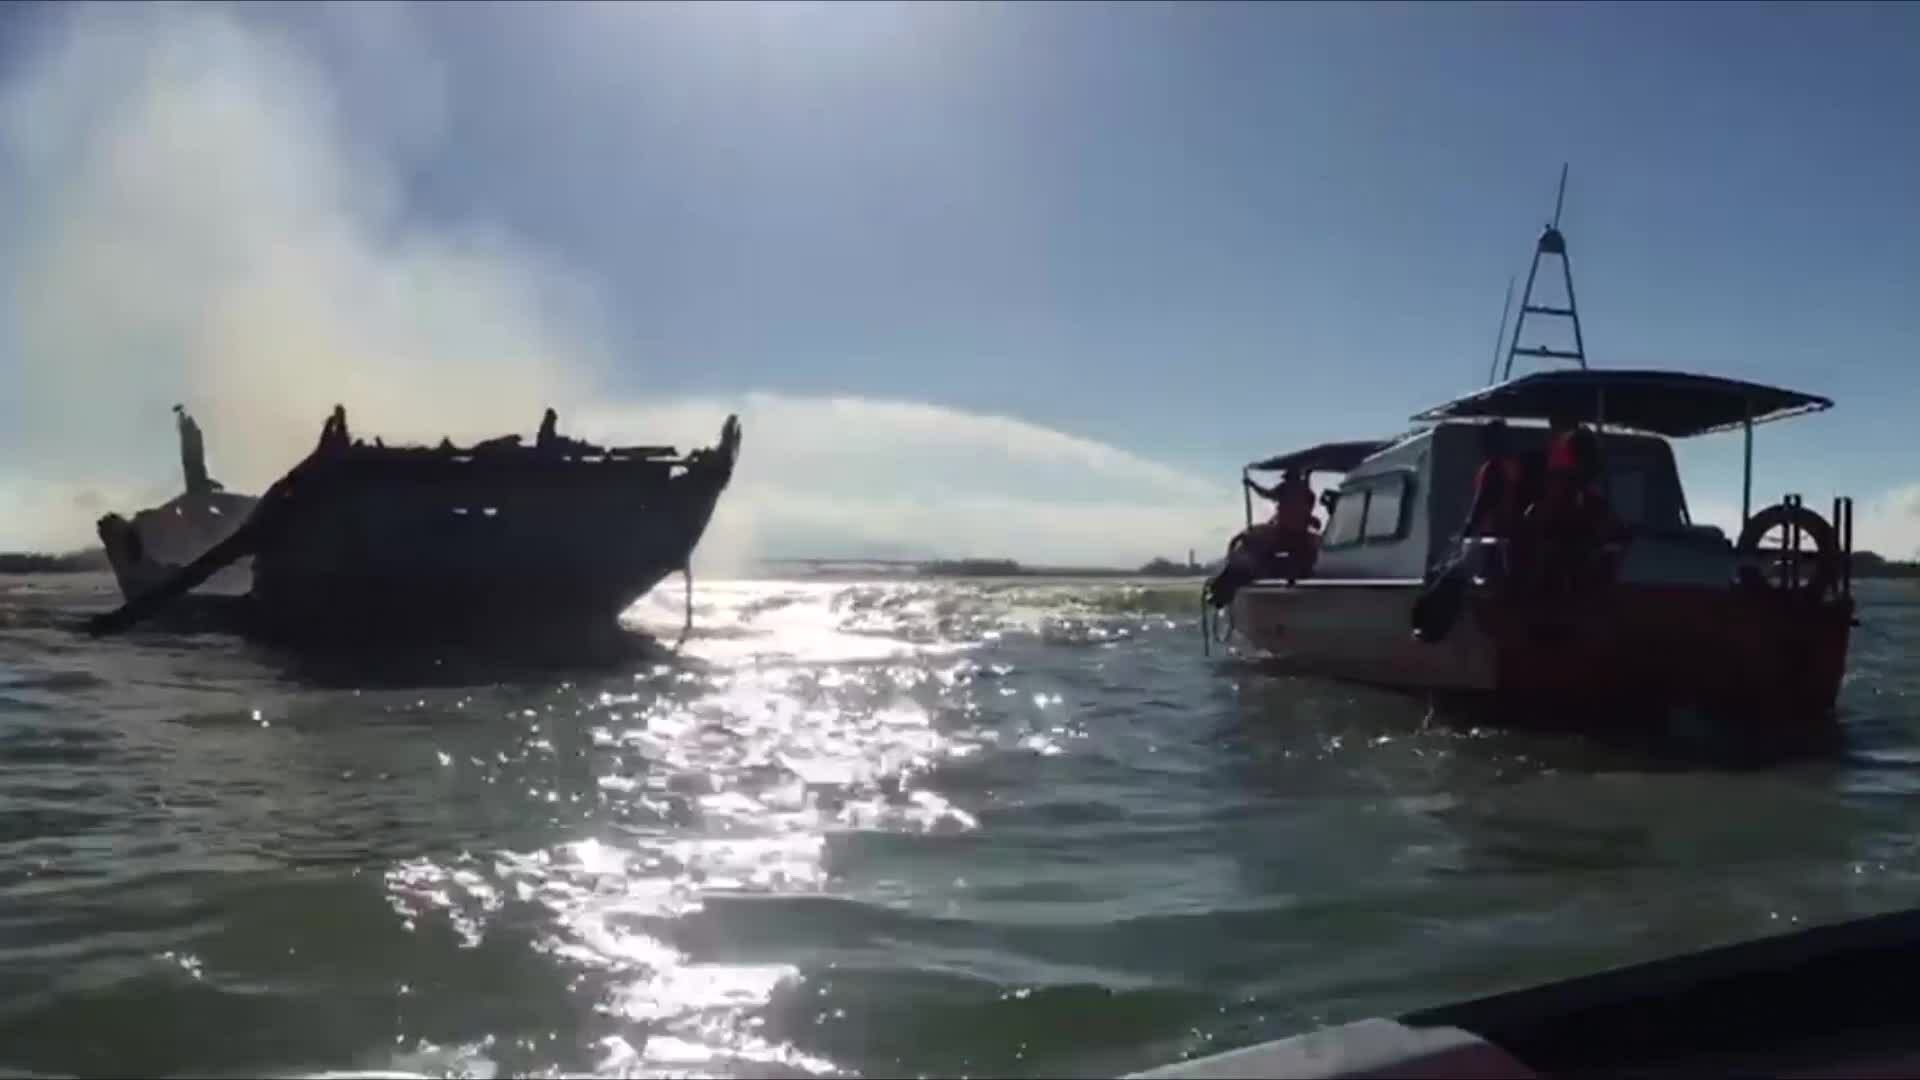 Cù Lao Chàm: Tàu du lịch bốc cháy, 14 khách thoát nạn trong gang tấc - Ảnh 3